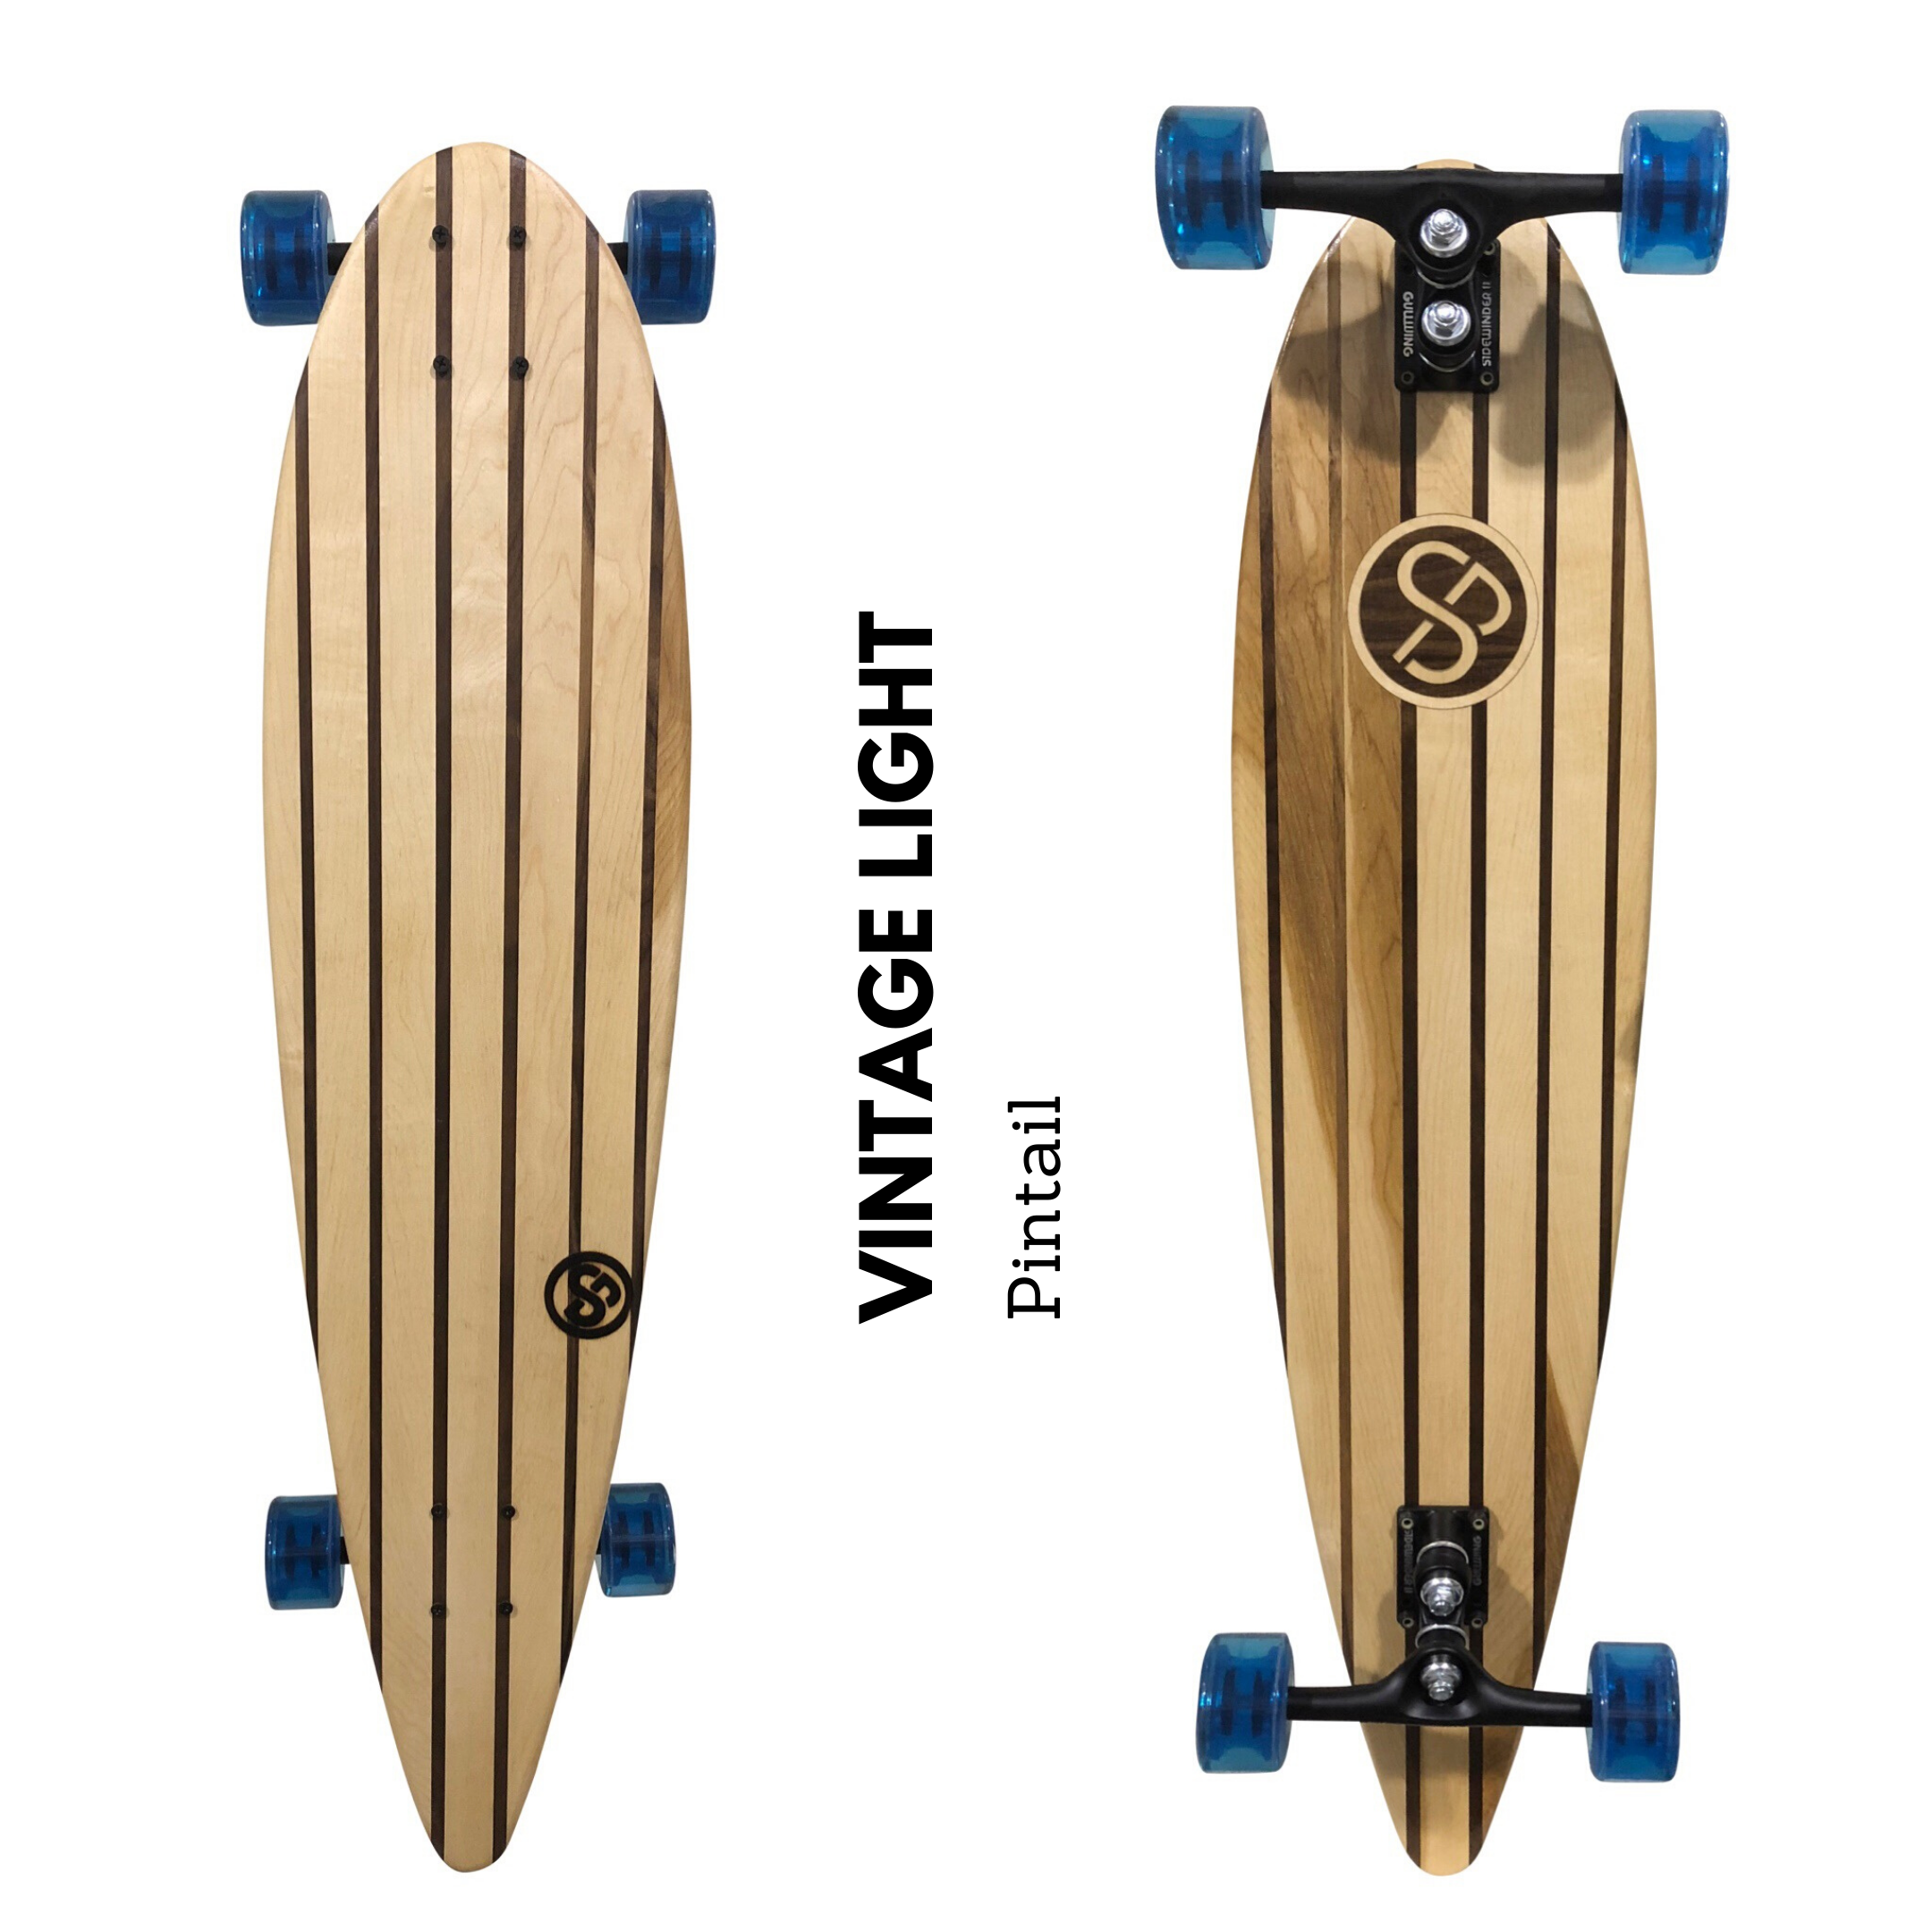 Professionnel Bois Skateboard Complet Board Skateboard Imprimer Board Funboard Longboard 